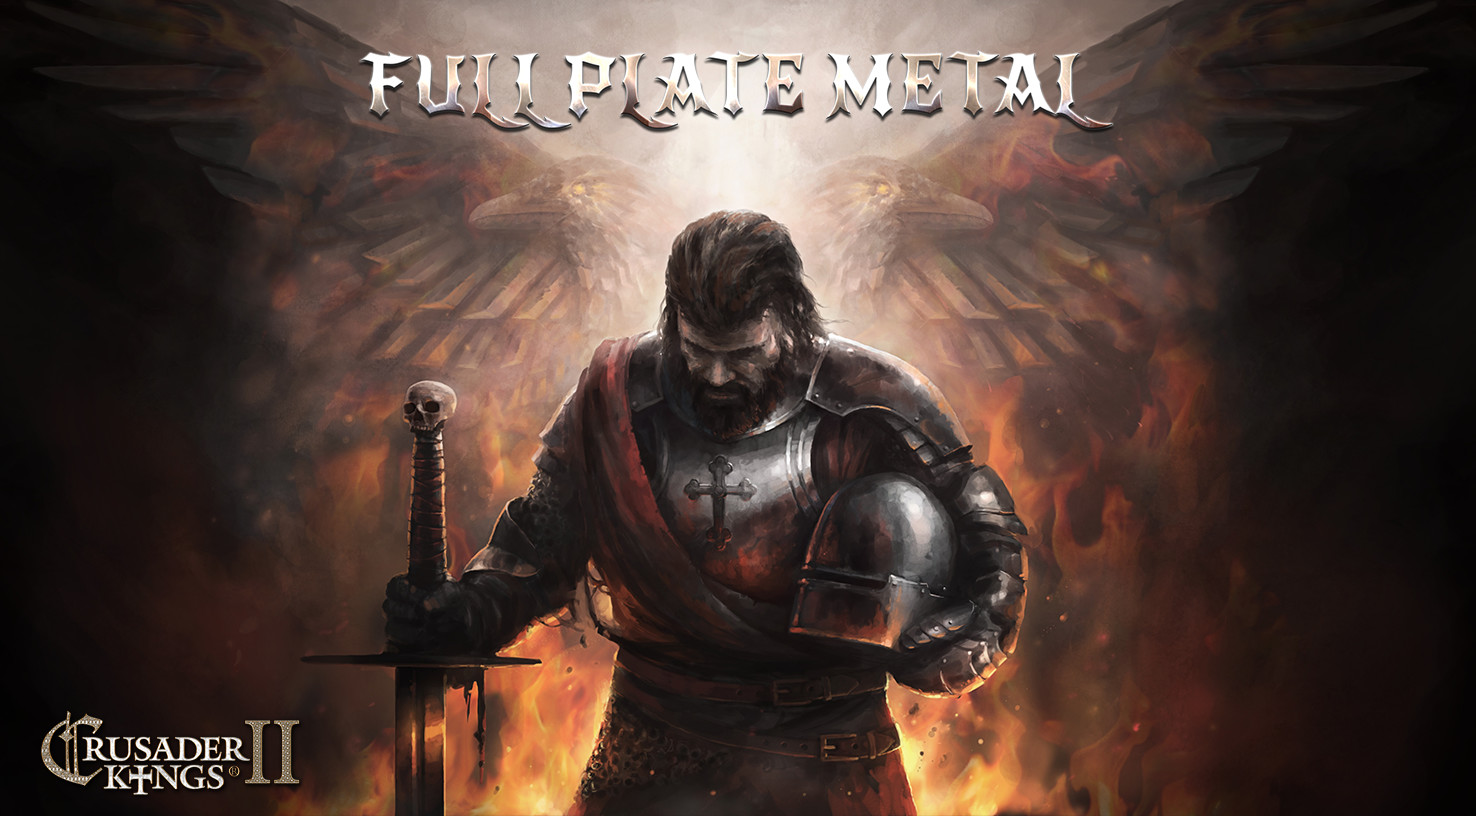 Crusader Kings II - Full Plate Metal DLC Steam CD Key [USD 1.84]